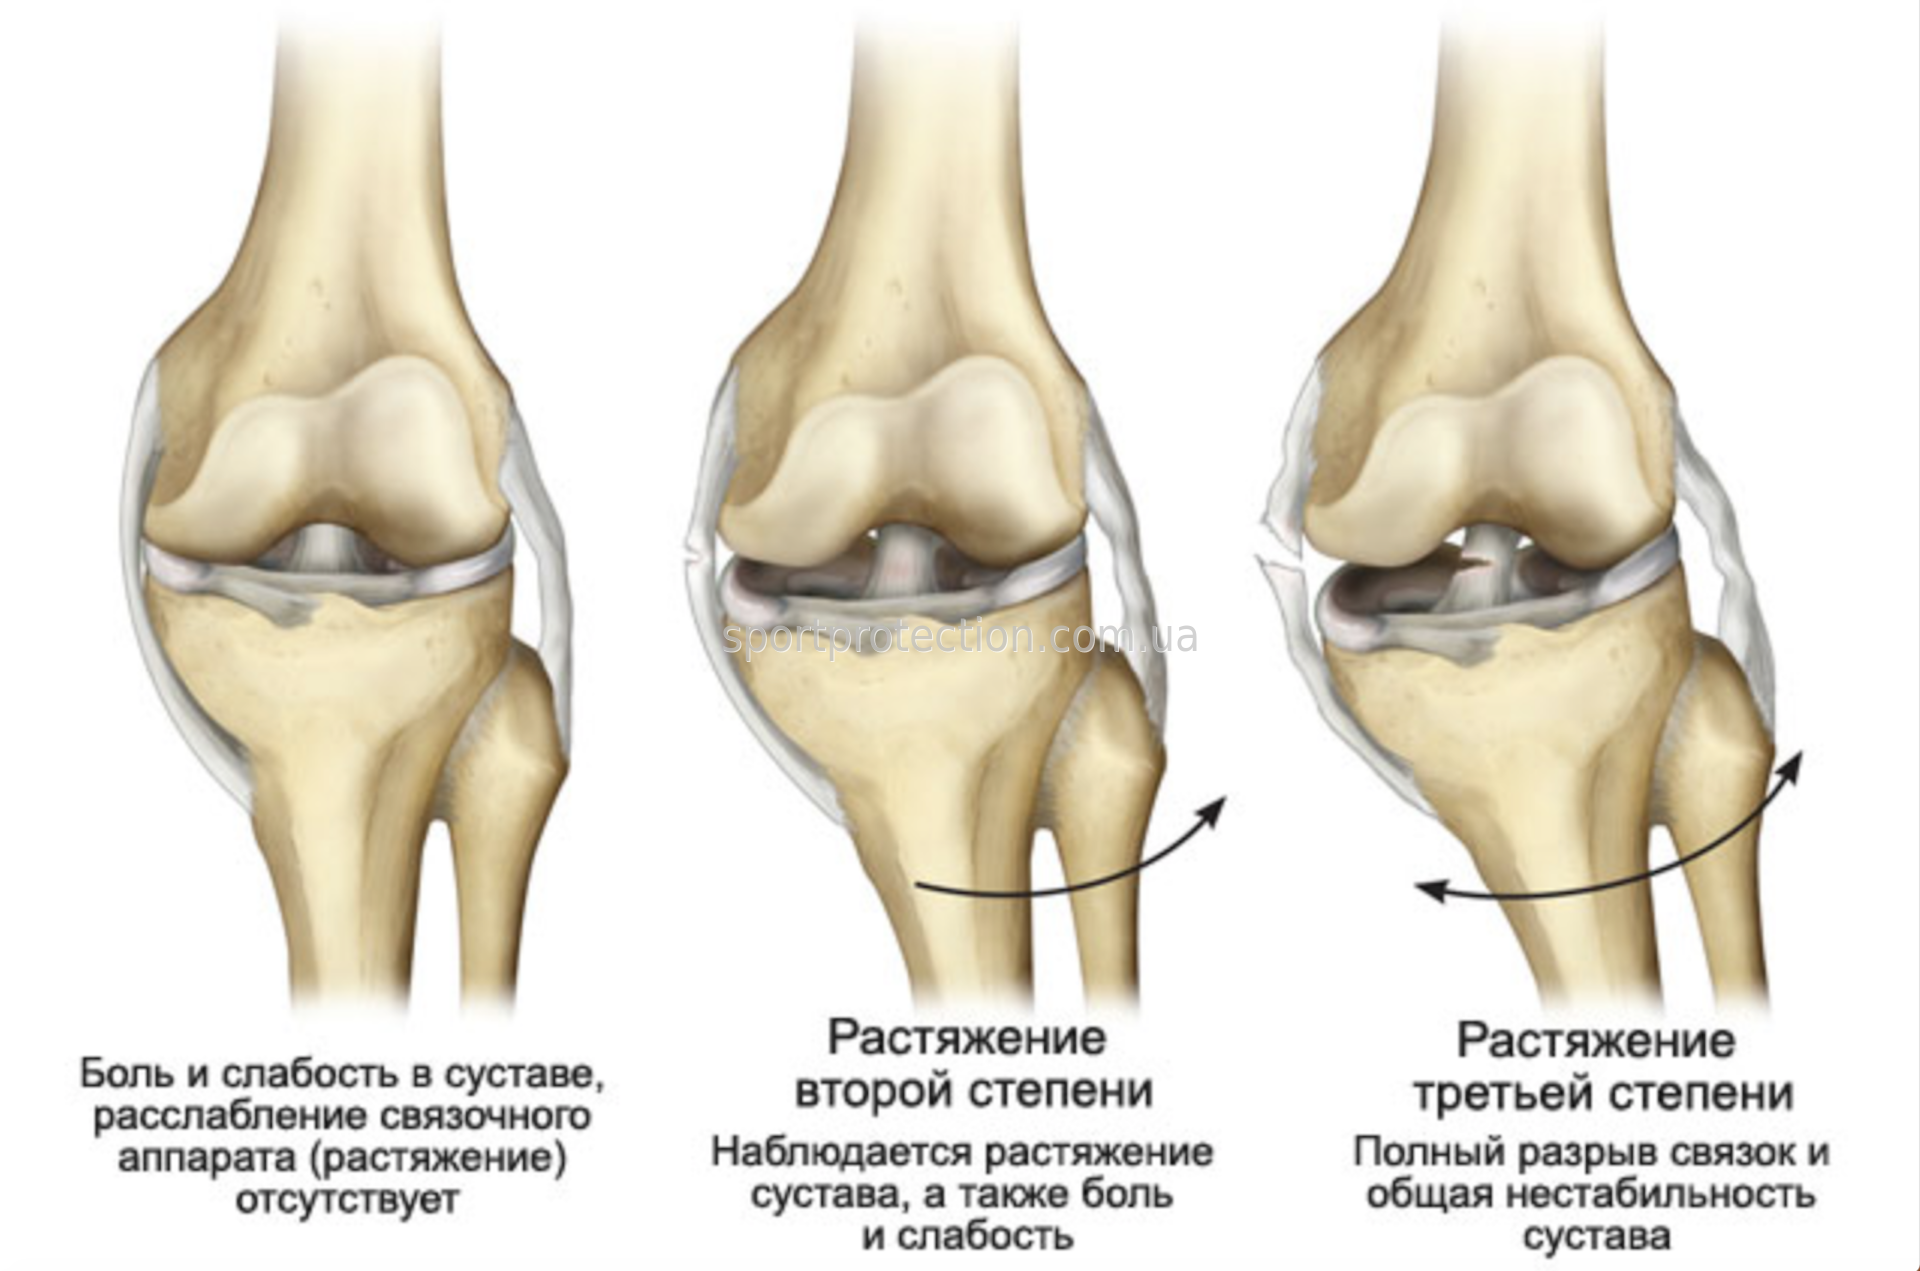 Цито коленный сустав. Ушиб повреждение связок колена. Диагностика повреждений боковых связок коленного сустава. Степени повреждения коленного сустава. Степени разрыва боковой связки коленного сустава.